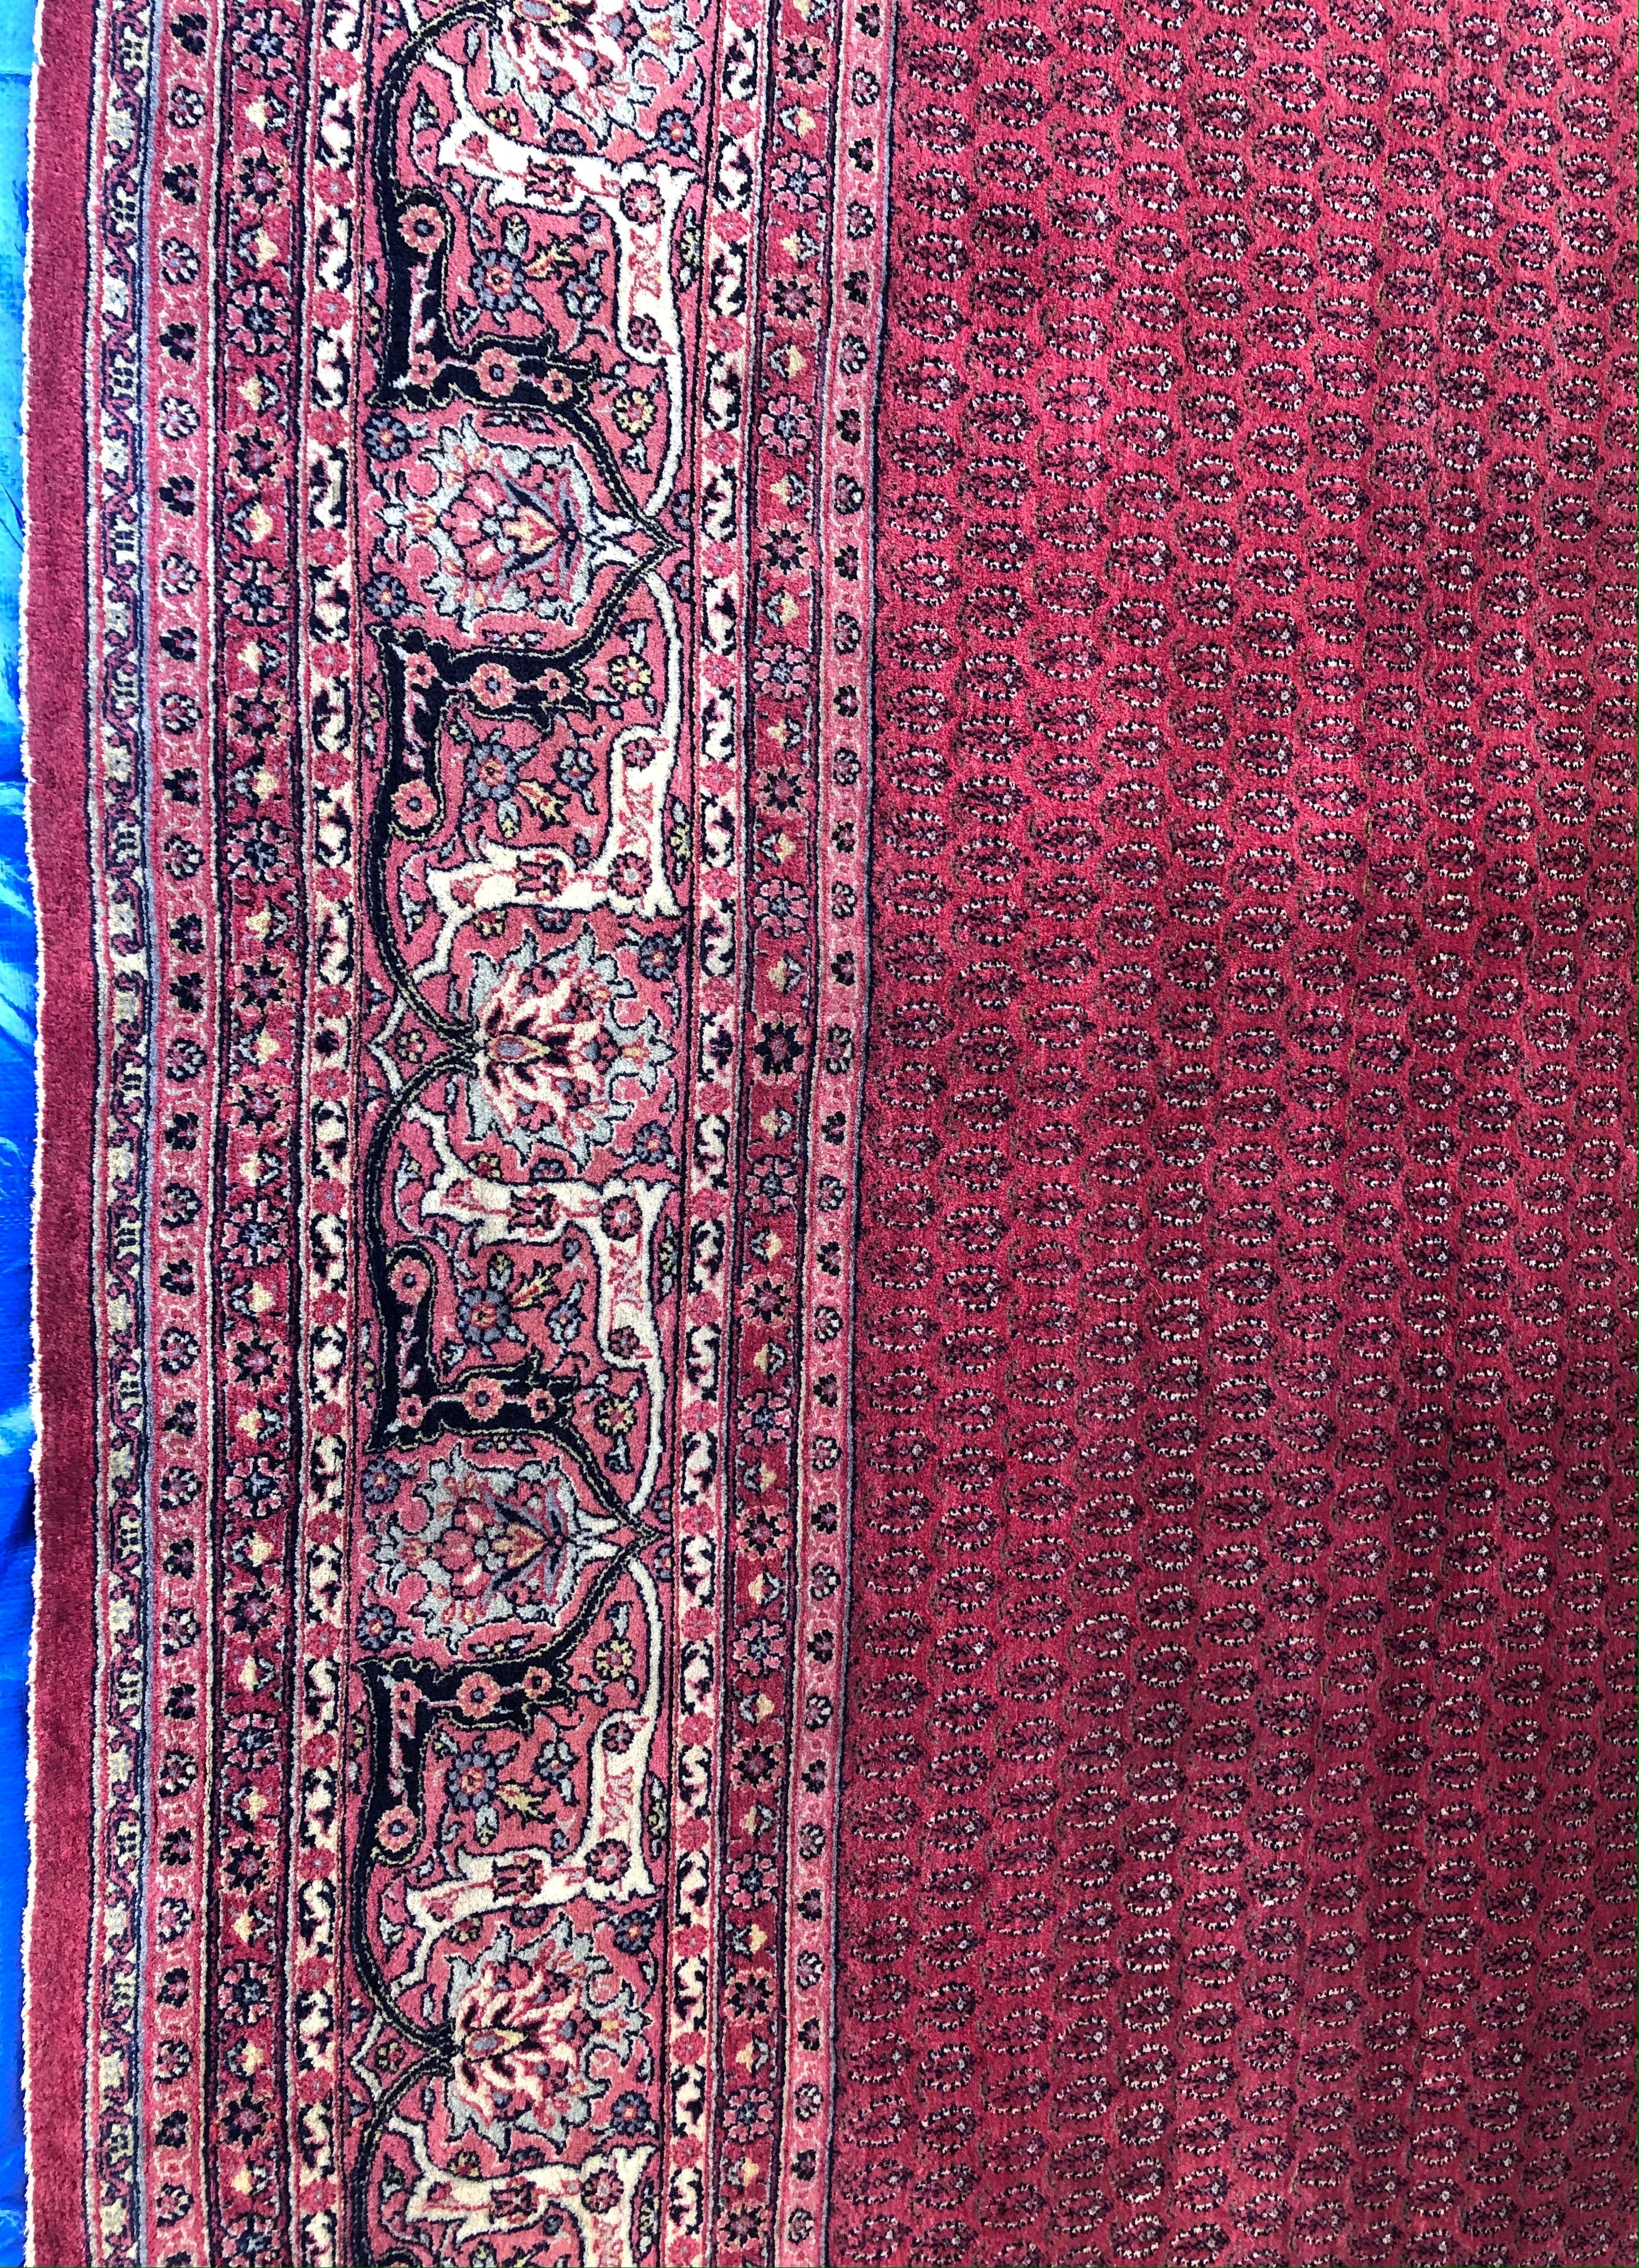 Schöner dekorativer Teppich, handgeknüpft in der Provinz Nordkurdistan. Das Muster besteht aus Rauten, Mir-e Buteh und Herati, und der Teppich wird von Burgunder- und Beigetönen dominiert. Die Wolle ist im Allgemeinen von hoher Qualität, ähnlich wie